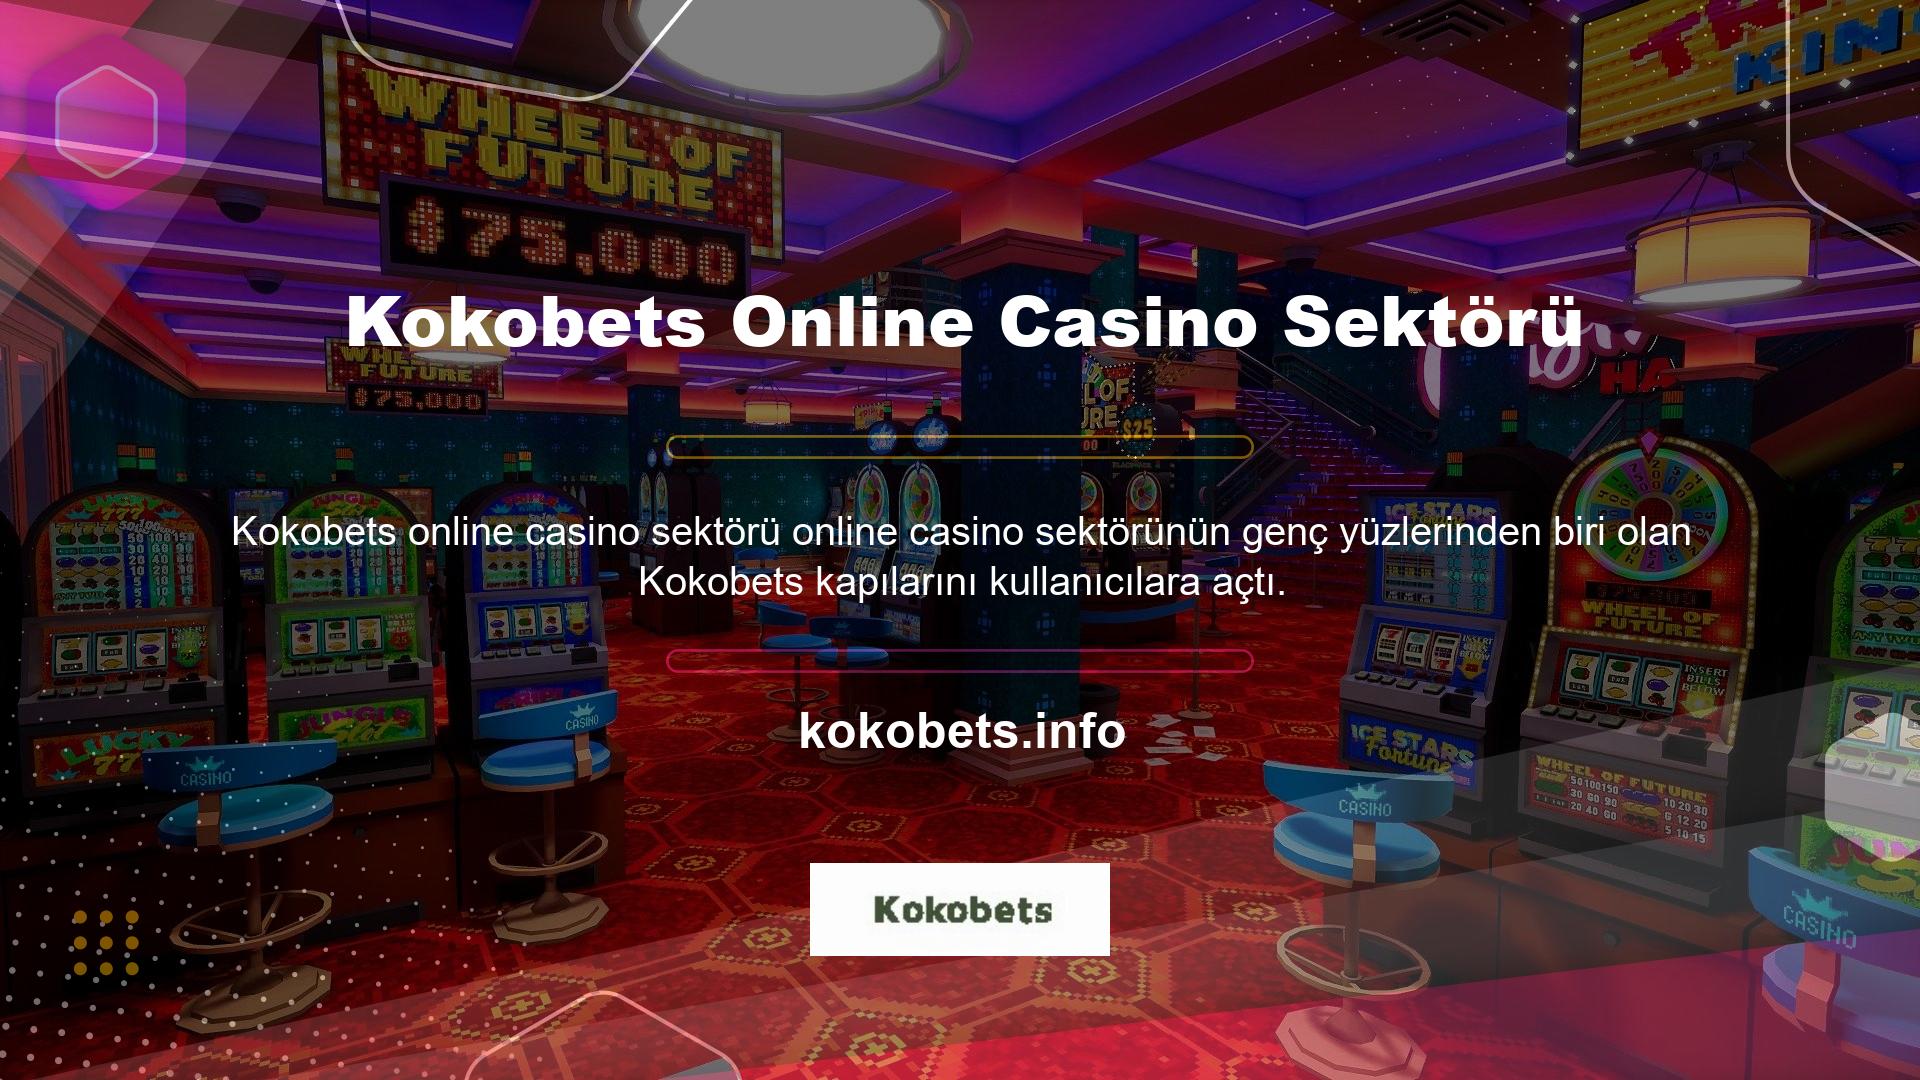 Casino Otoritesi'nden alınan lisans uyarınca casino faaliyetlerinde bulundu